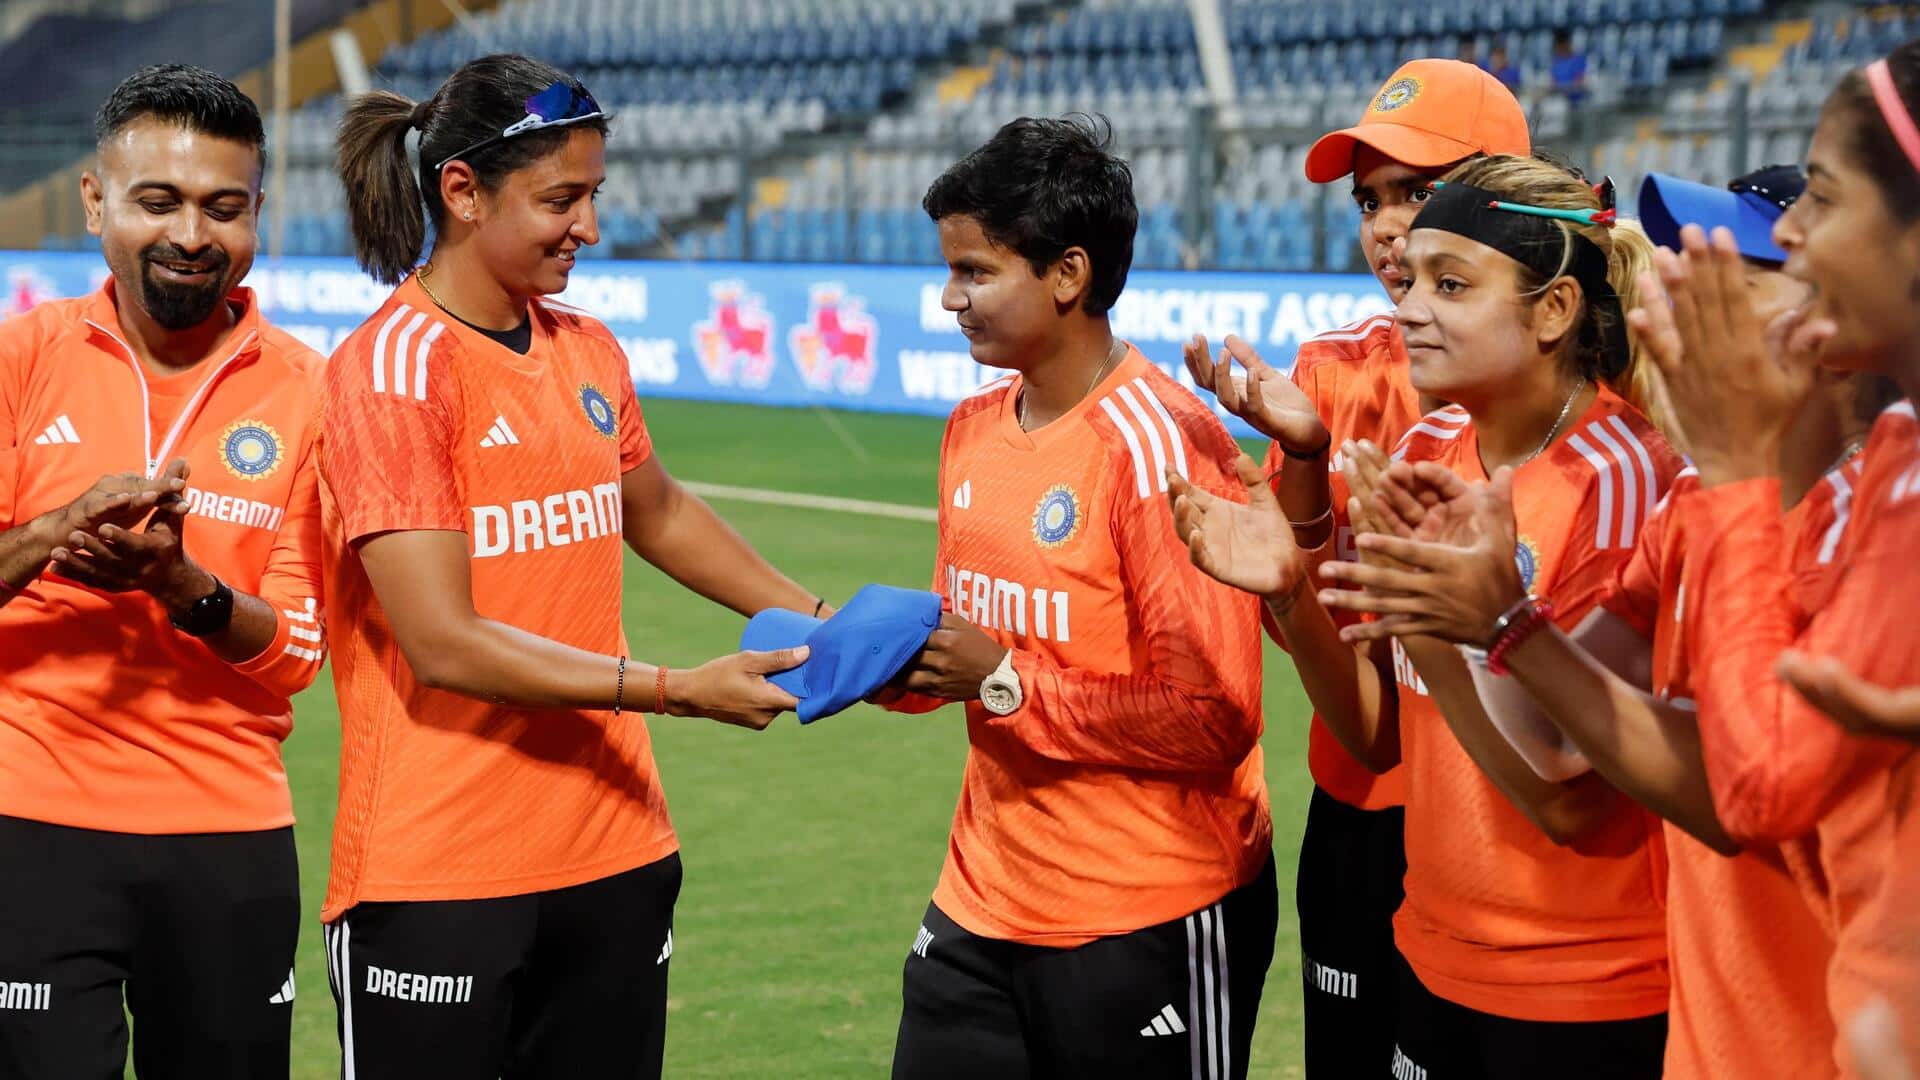 दीप्ति शर्मा 100 टी-20 अंतरराष्ट्रीय खेलने वाली तीसरी भारतीय महिला क्रिकेटर बनीं, जानिए आंकड़े